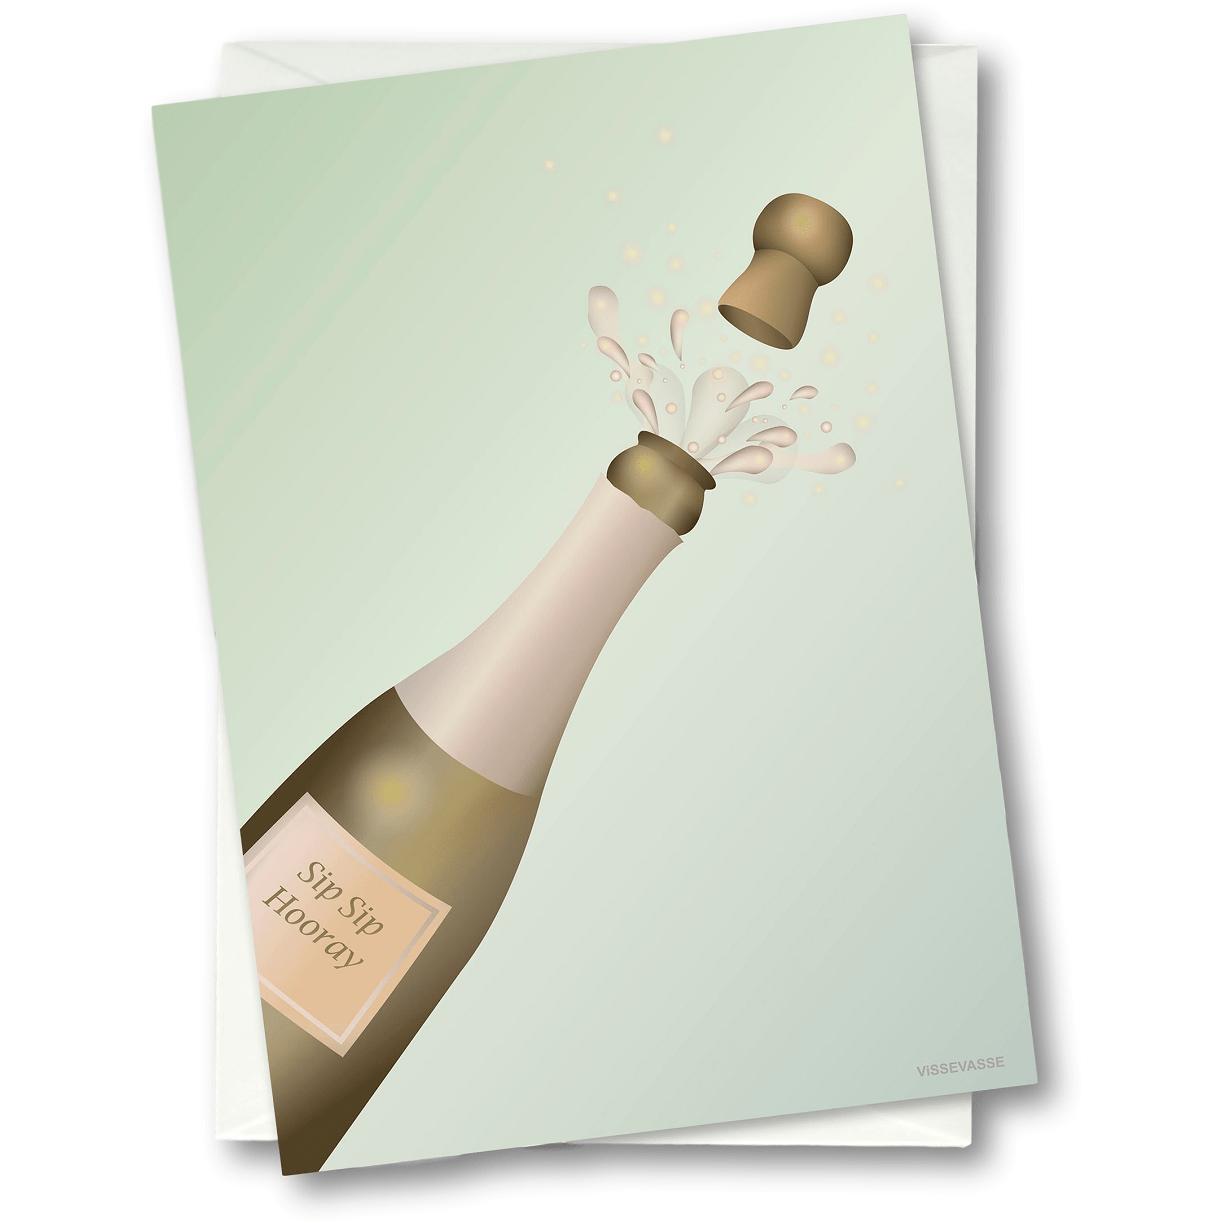 Vissevasse Cheers Tarjeta de felicitación, 15 x21 cm